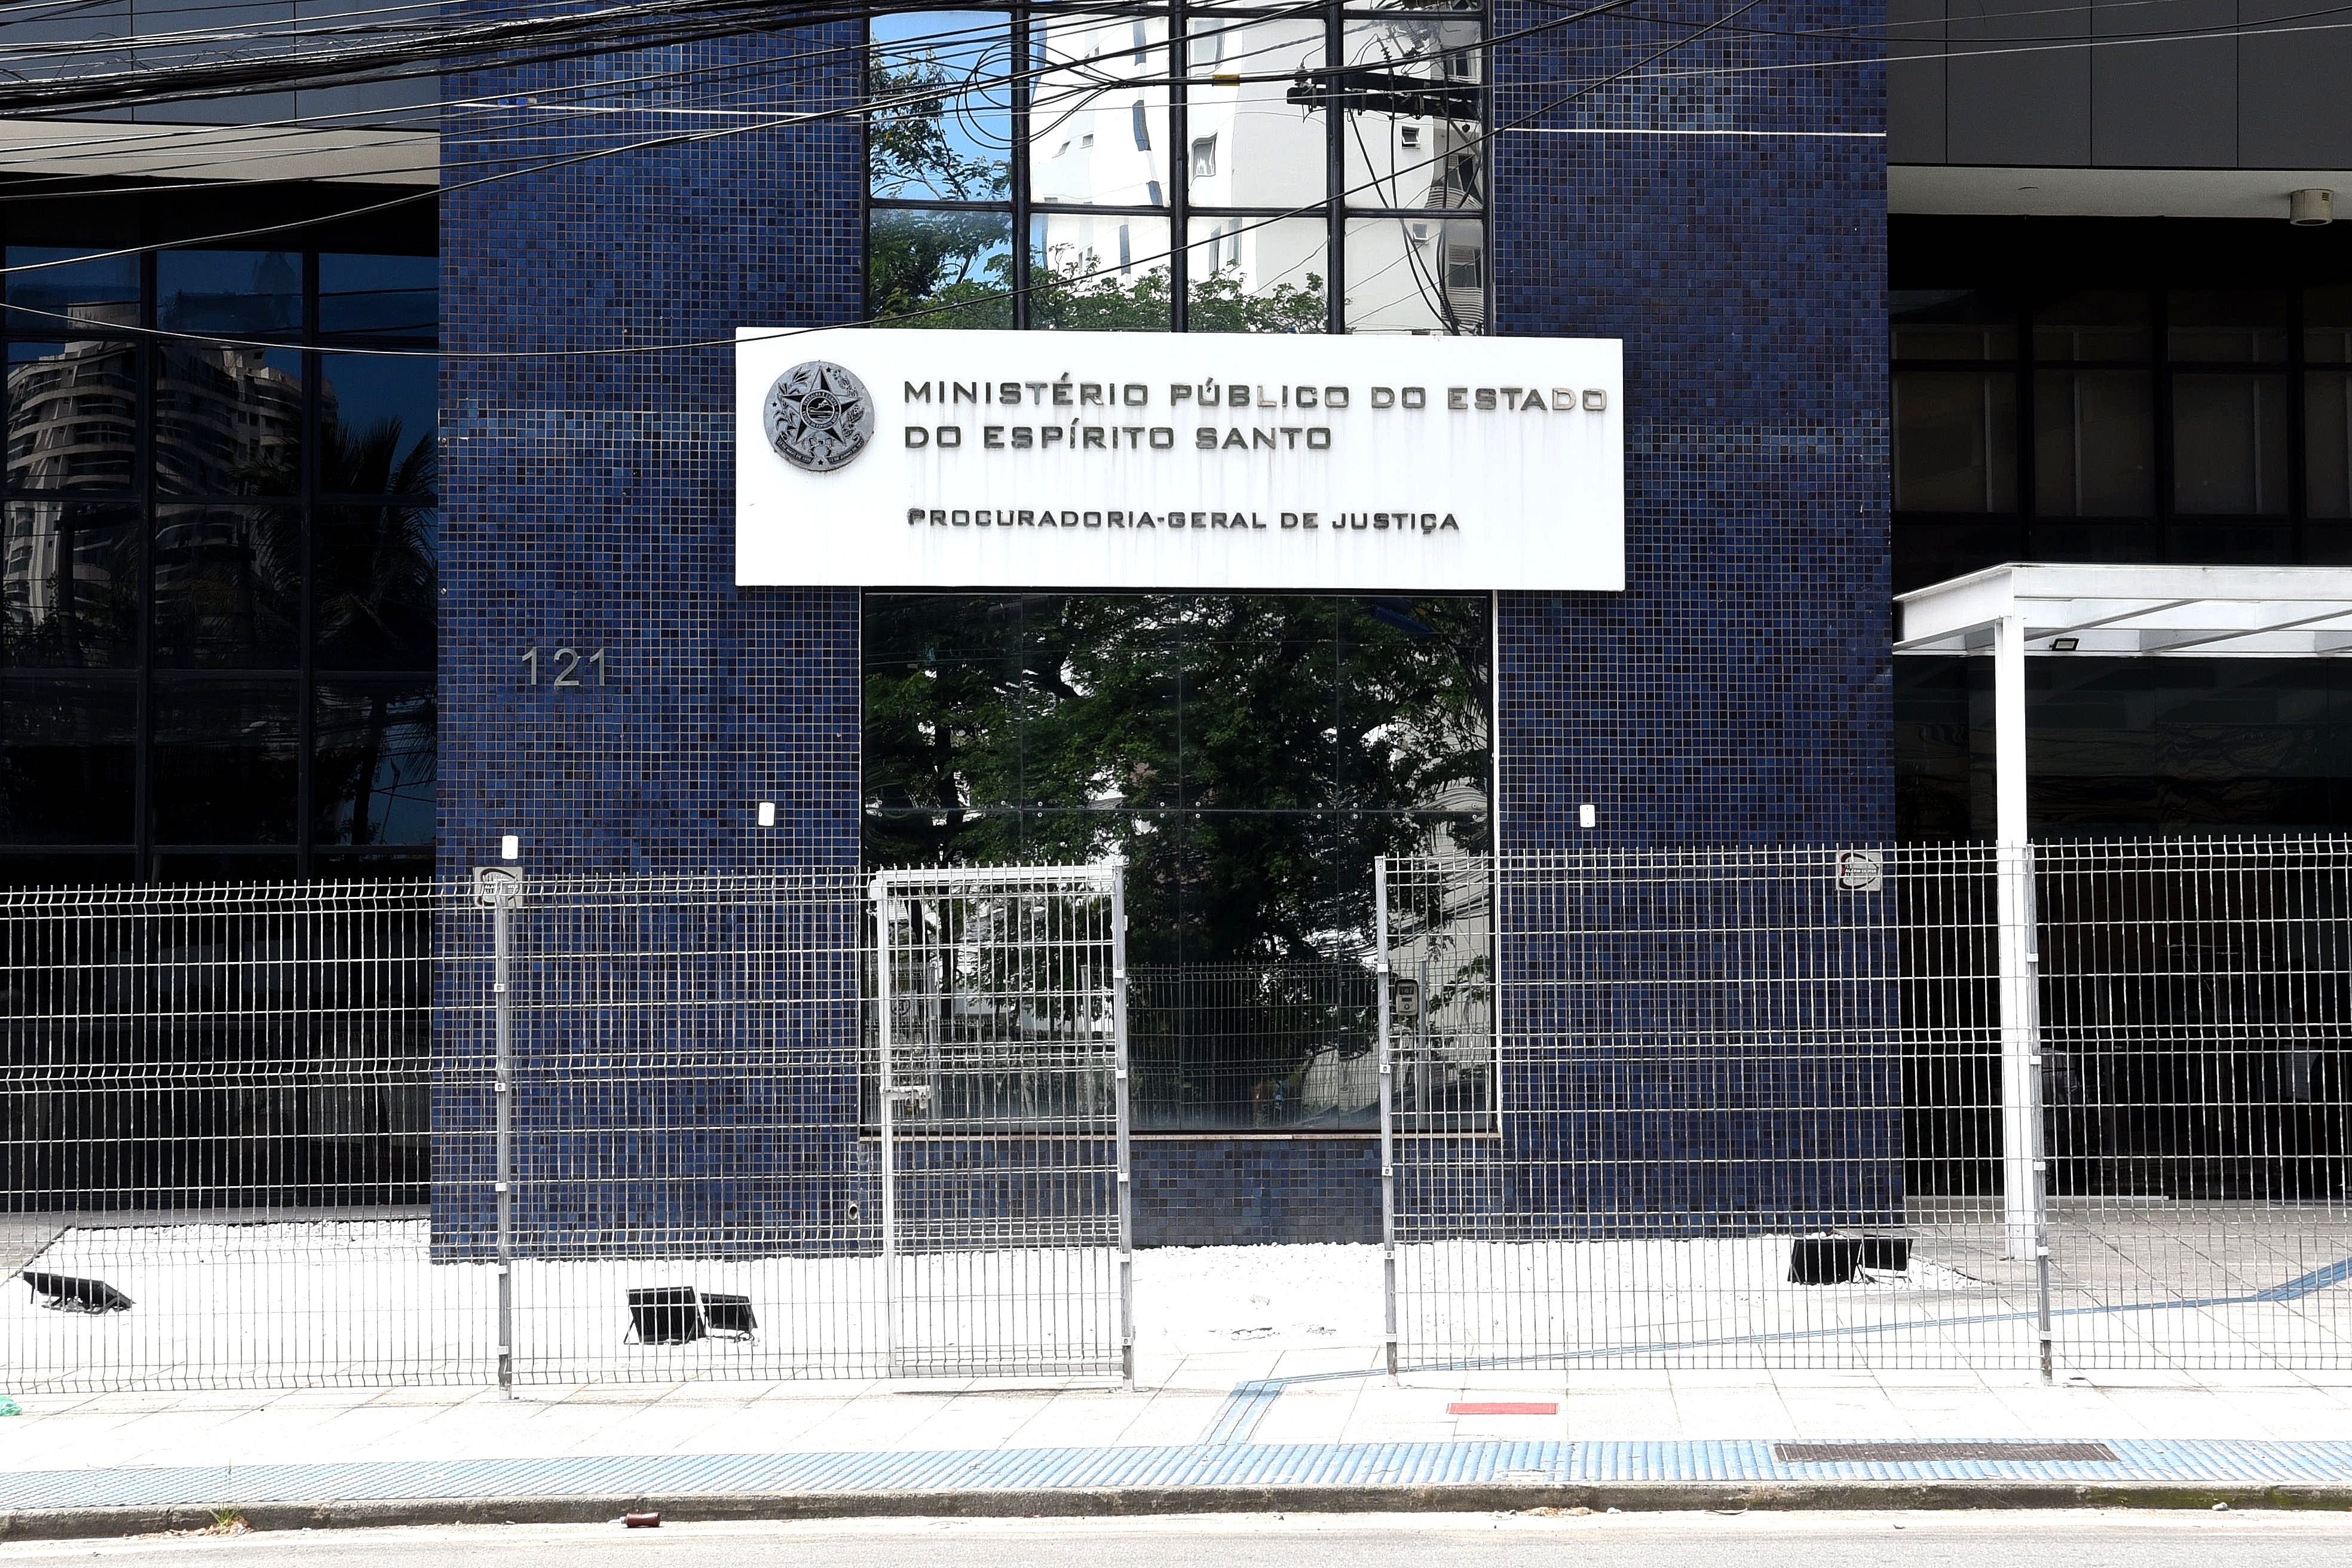 Encontro será realizado na sede da Associação Espírito Santense do Ministério Público (AESMP) quatro dias antes da eleição, marcada para o dia 22 de março.